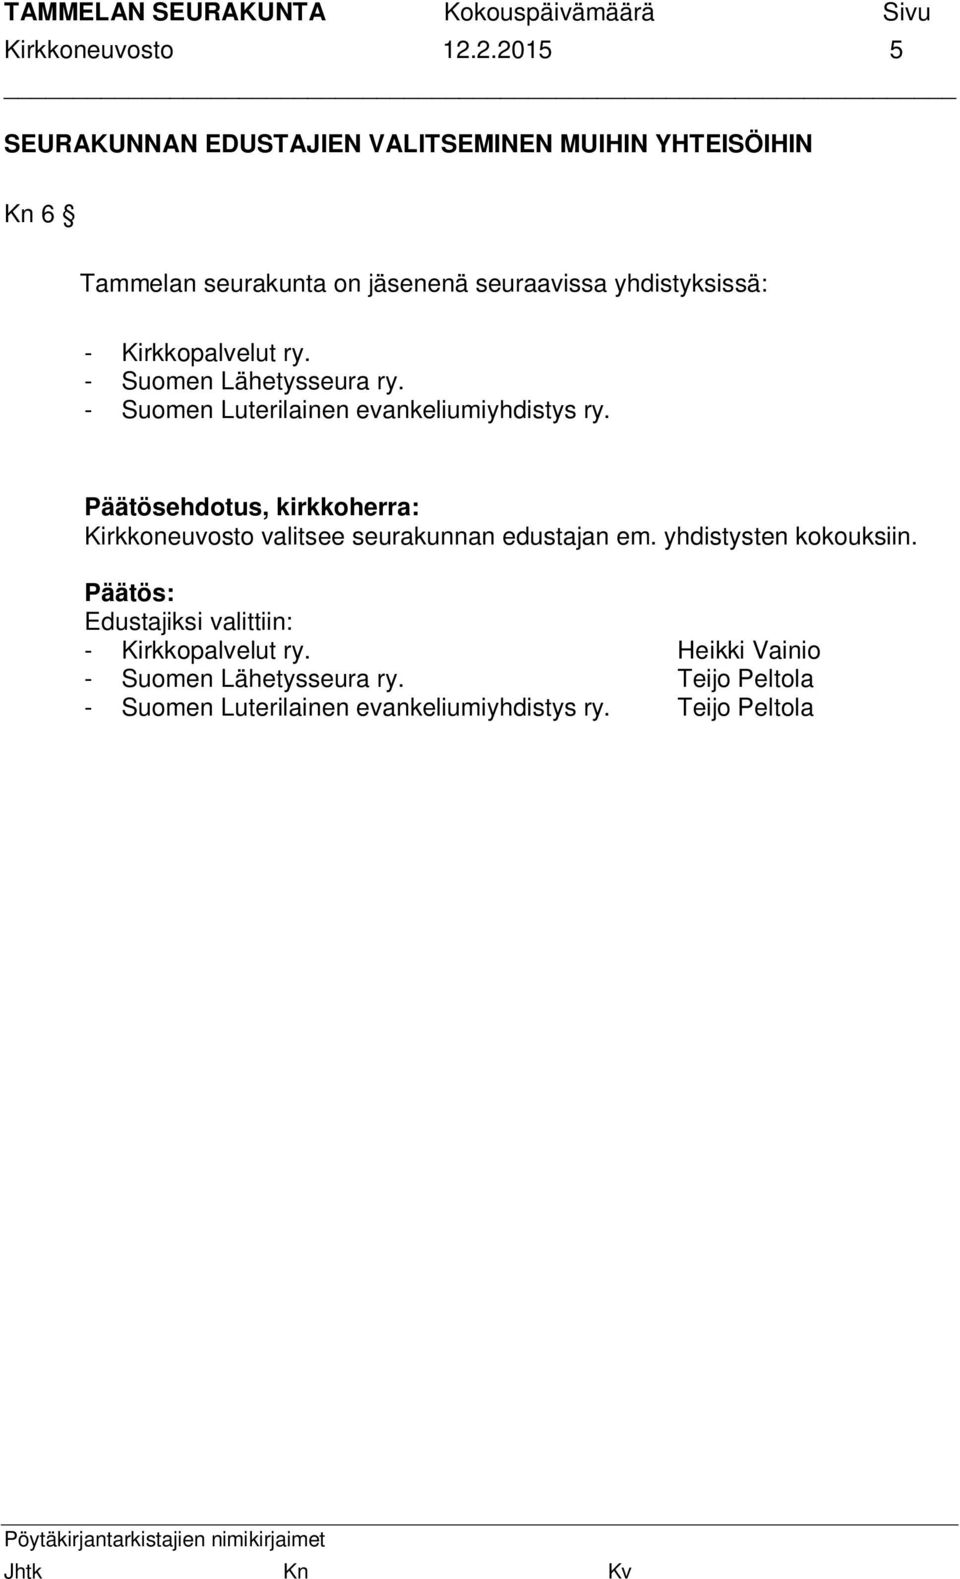 yhdistyksissä: - Kirkkopalvelut ry. - Suomen Lähetysseura ry. - Suomen Luterilainen evankeliumiyhdistys ry.